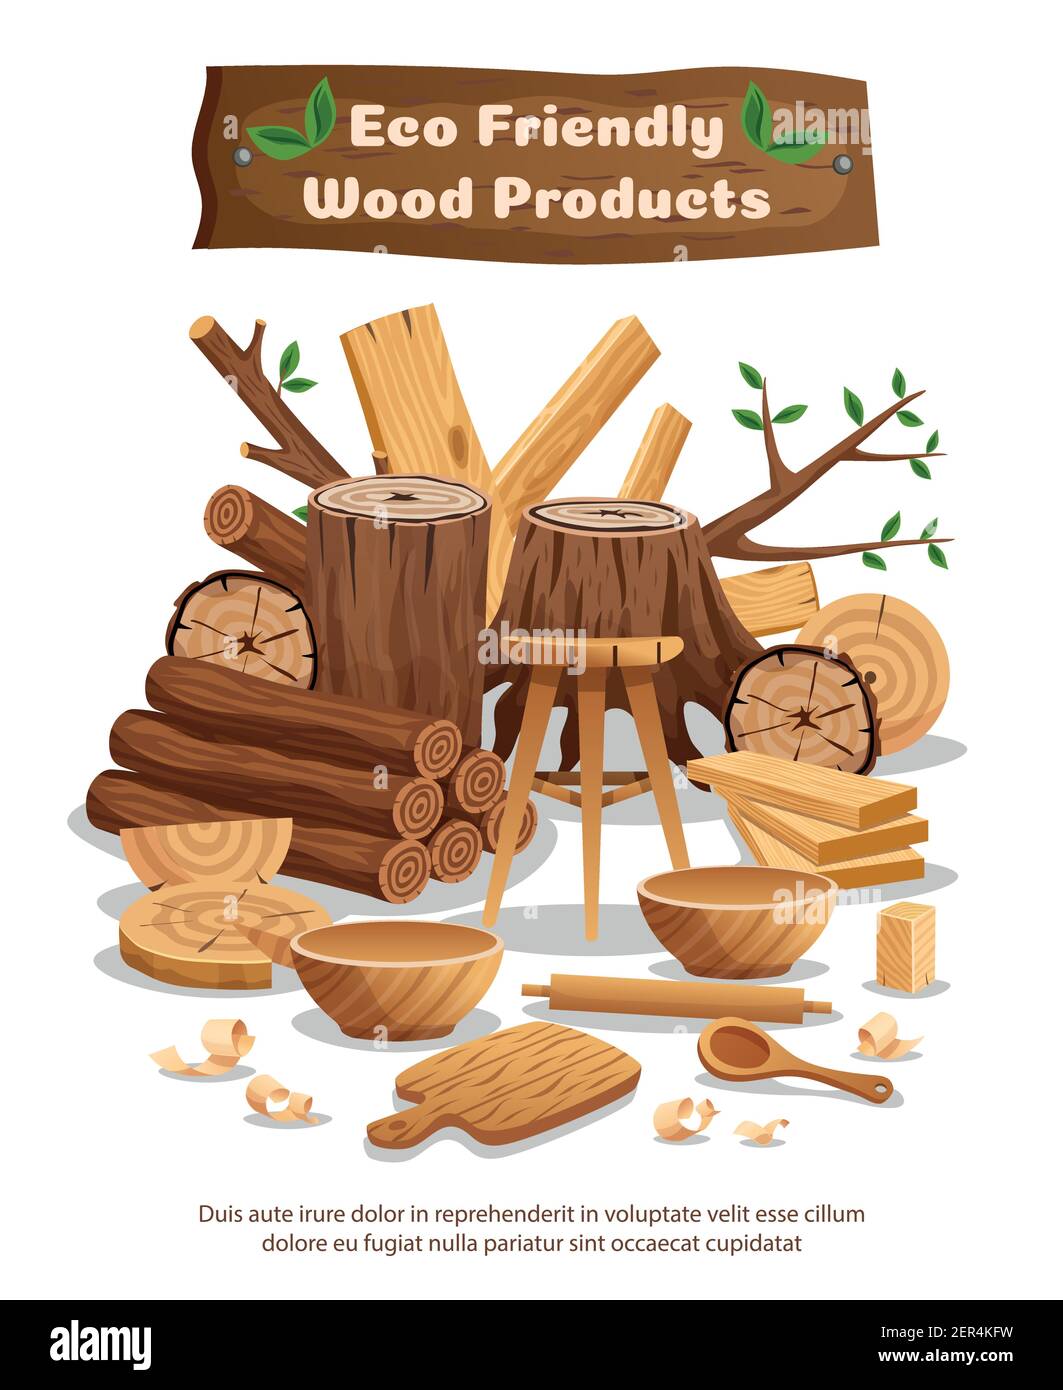 Holzindustrie Öko-Material und Produkte Werbung Komposition Poster mit Baum Stämme Bretter Schalen Löffel Vektor Illustration Stock Vektor